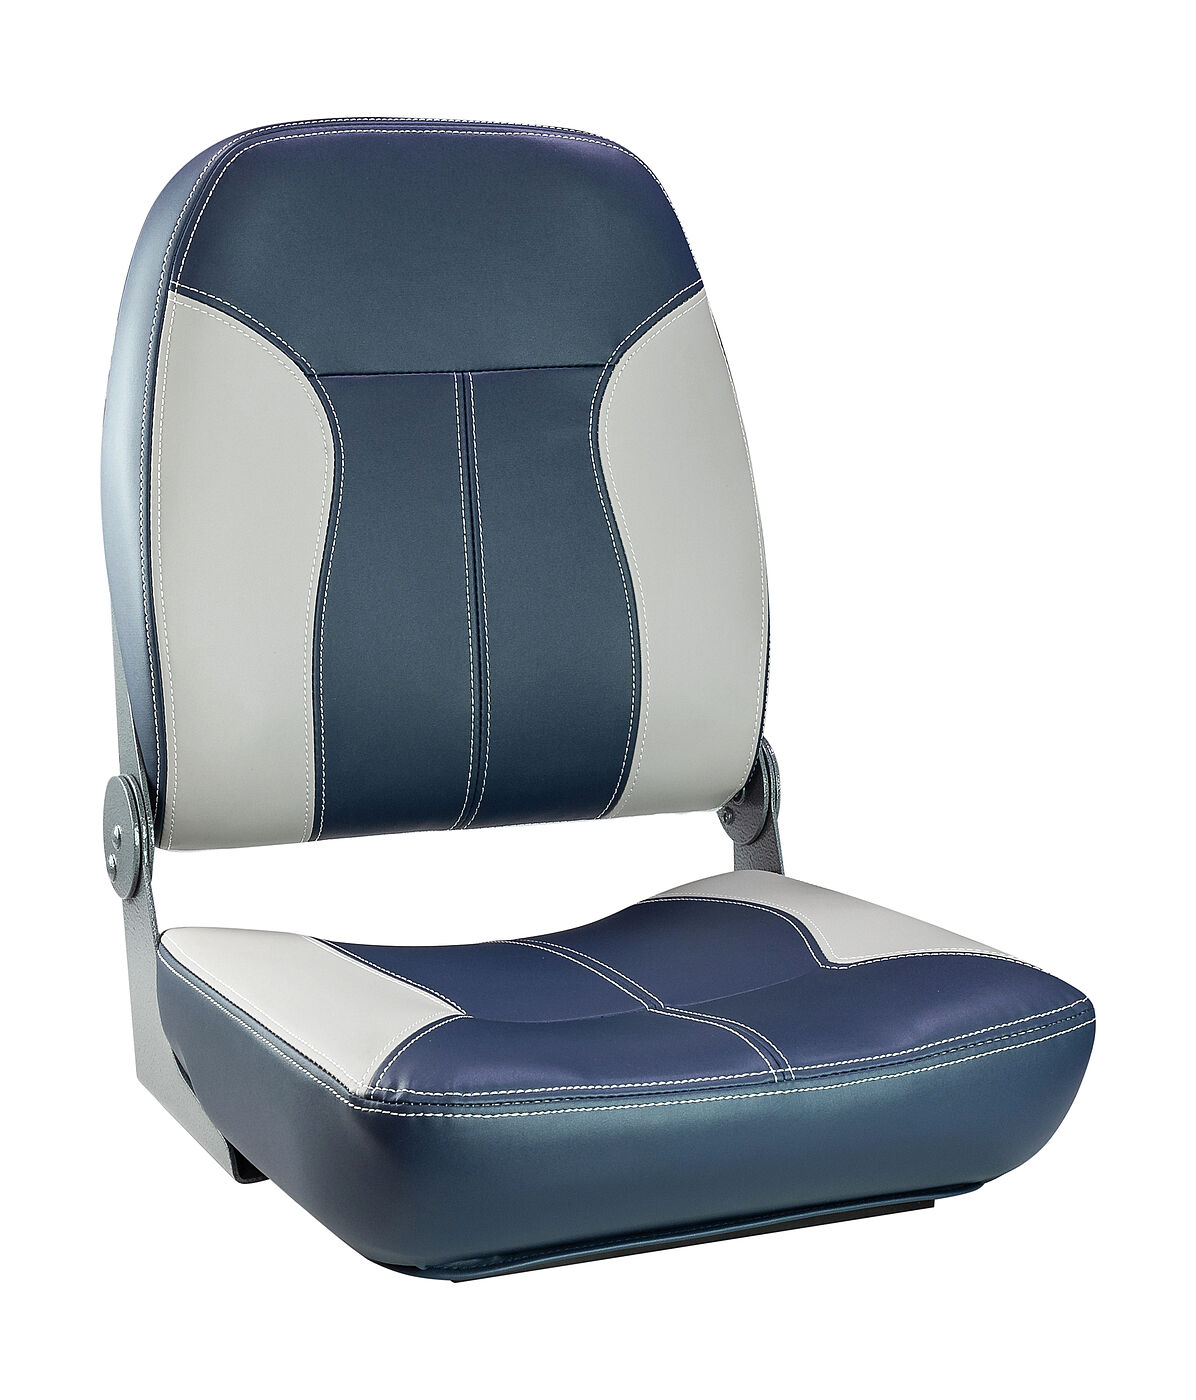 Кресло складное мягкое SPORT с высокой спинкой, синий/серый Springfield 1040513